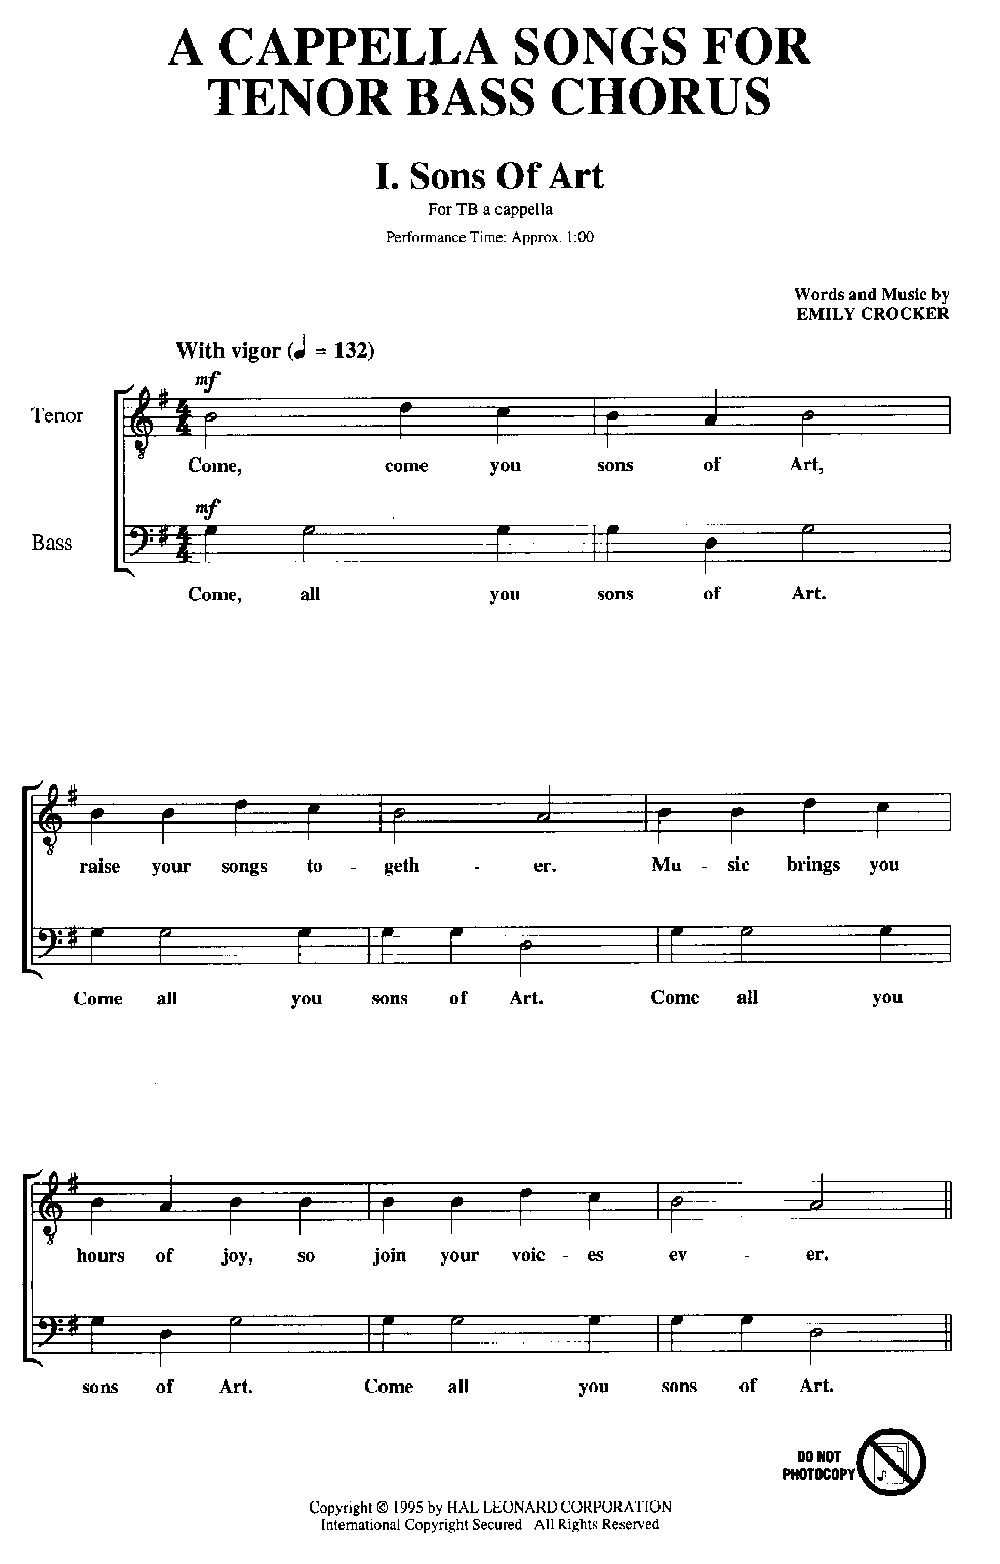 A Cappella Songs for Tenor Bass Choir